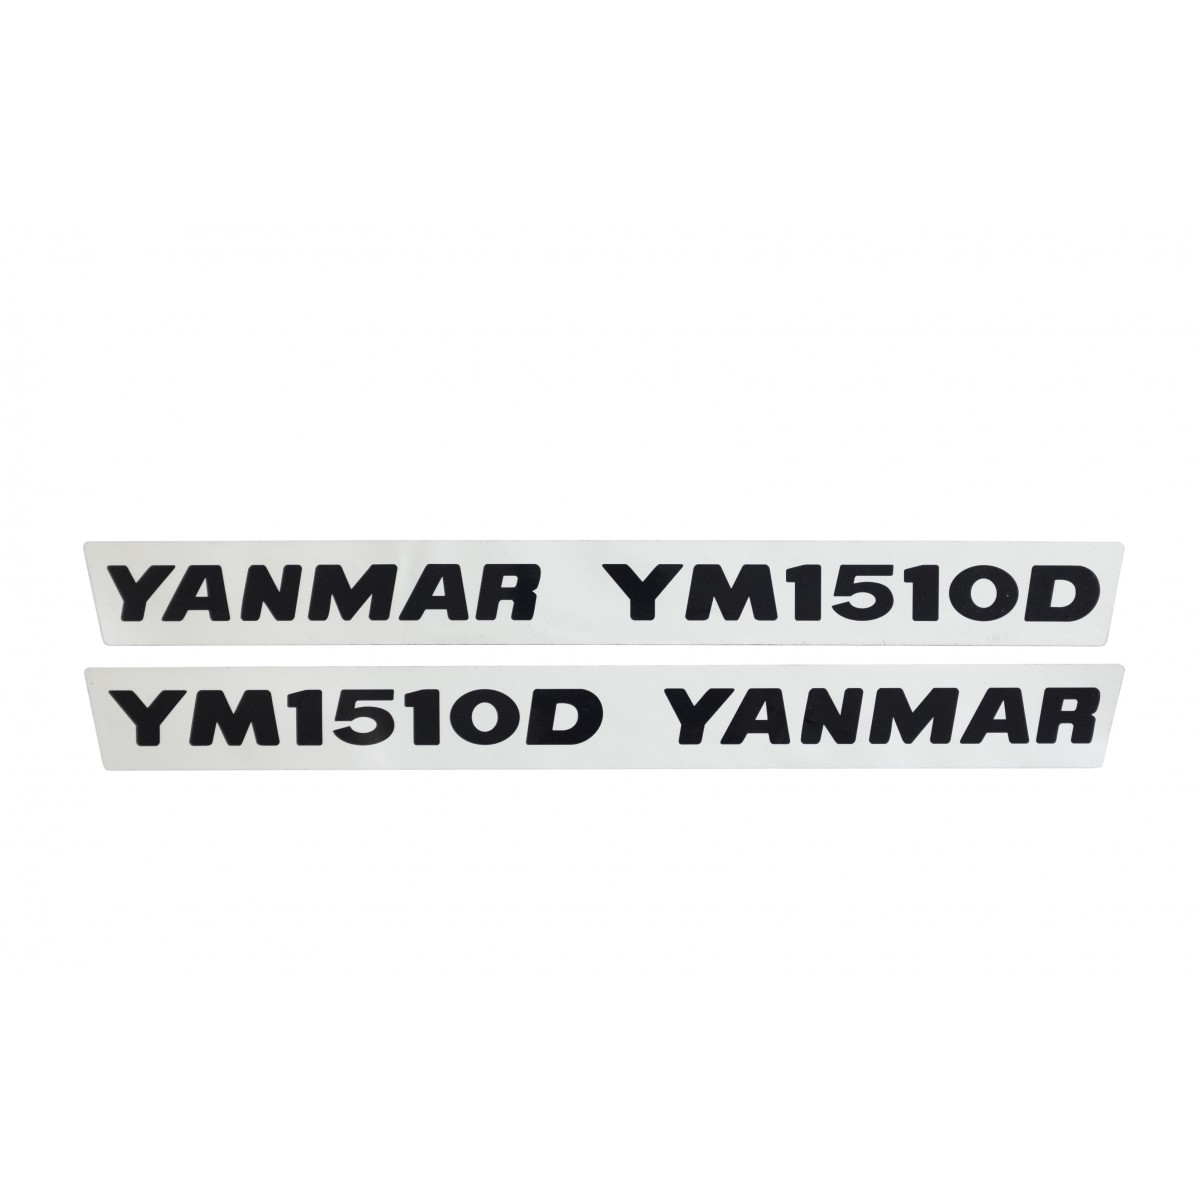 Naklejki Yanmar YM1510D